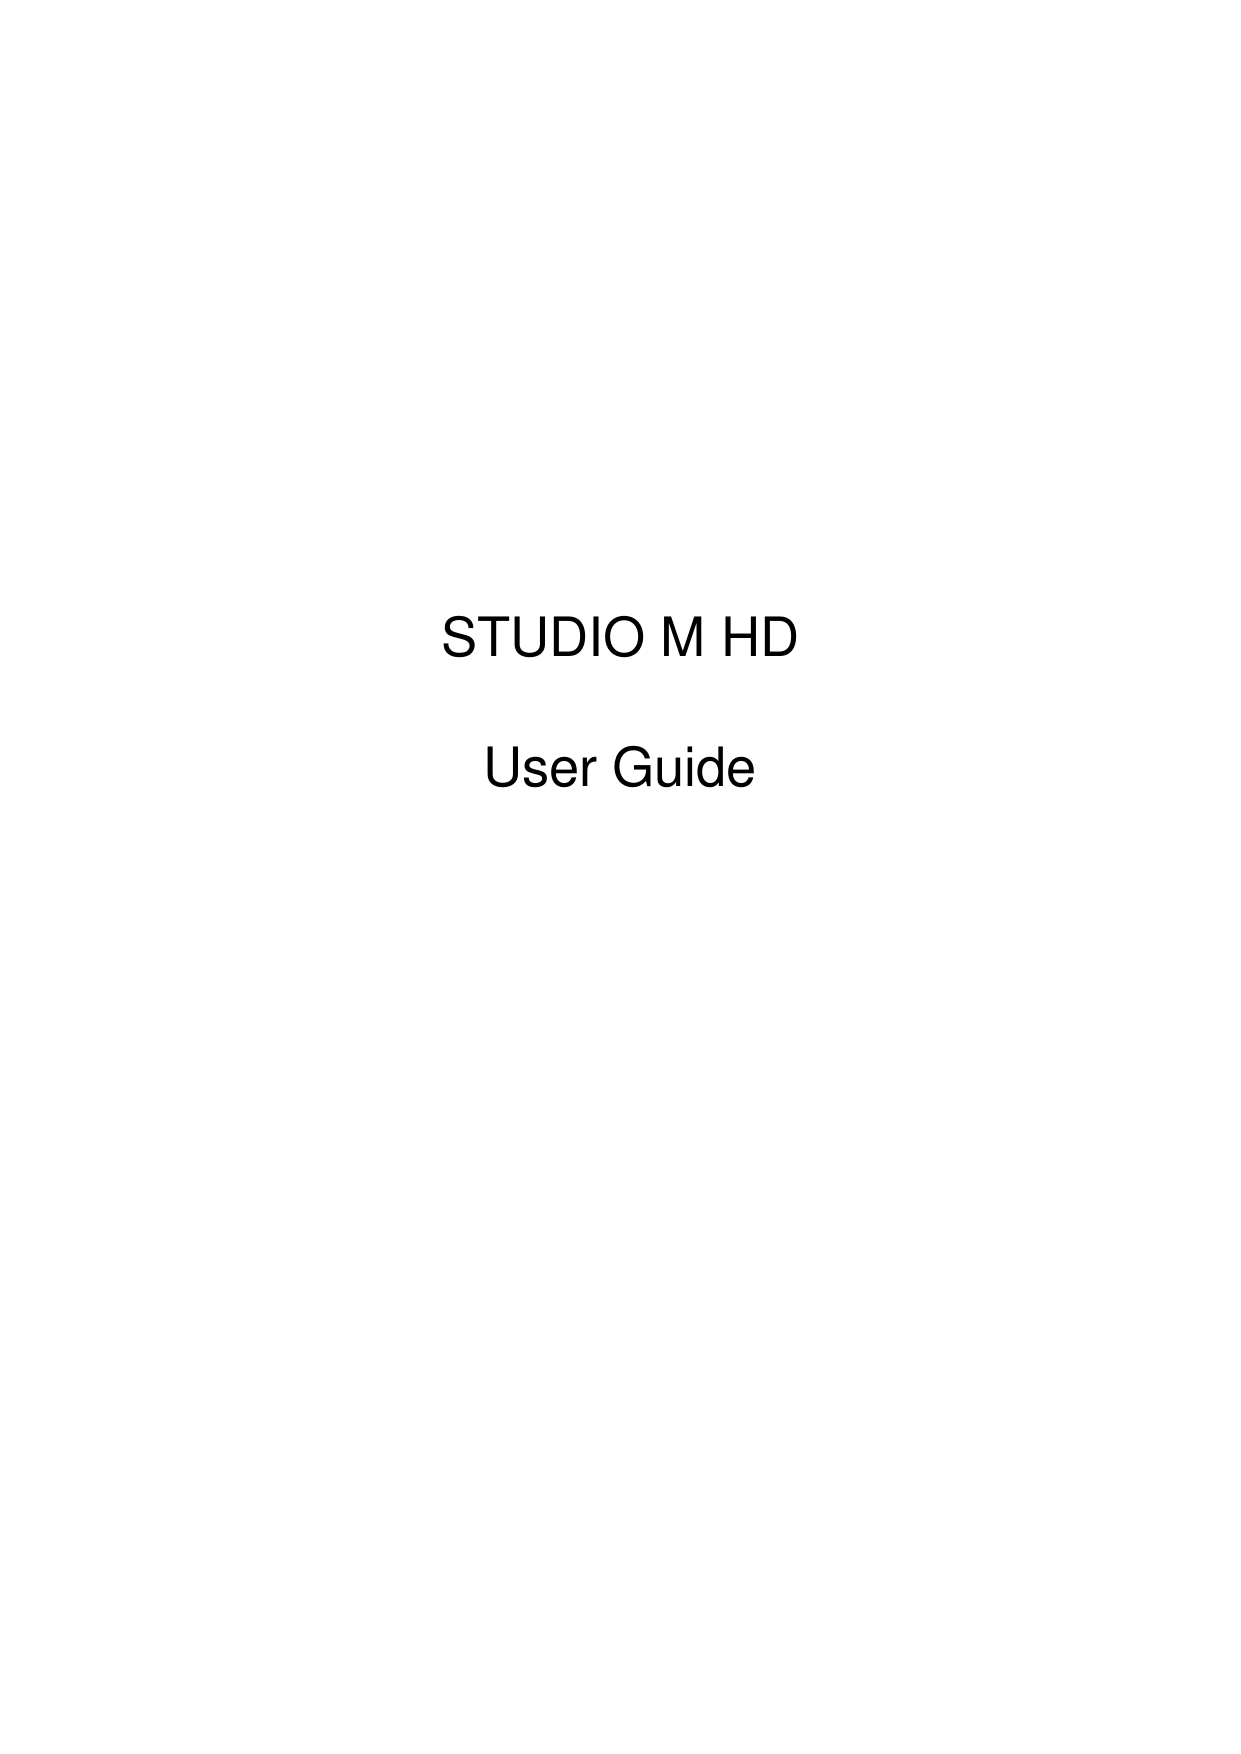           STUDIO M HD  User Guide                      